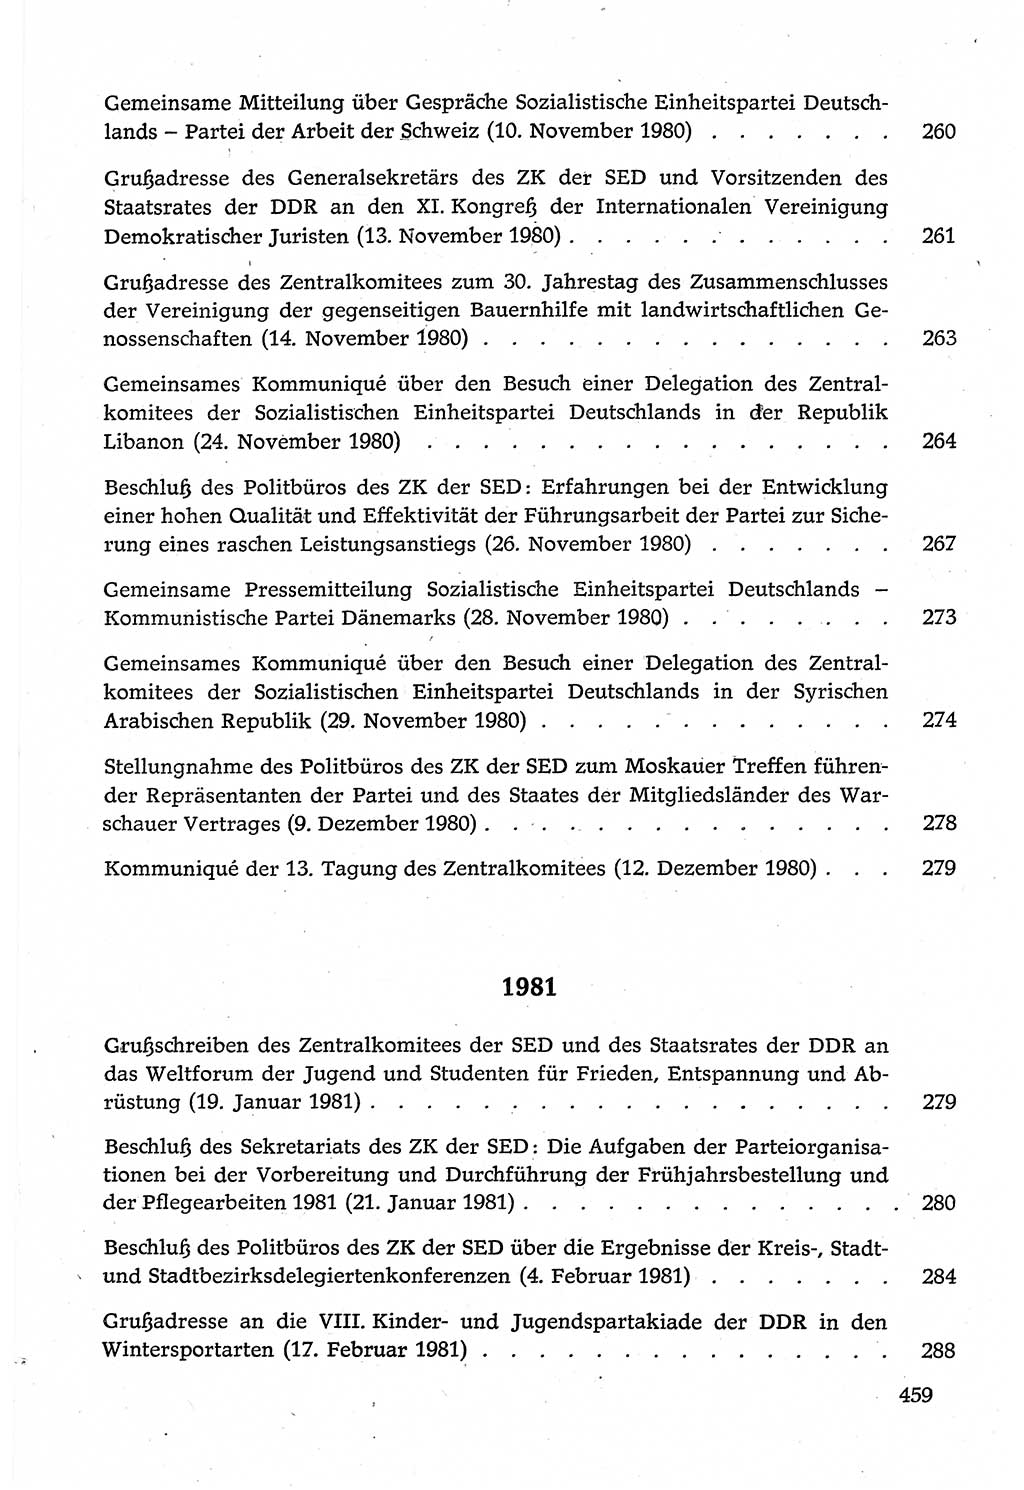 Dokumente der Sozialistischen Einheitspartei Deutschlands (SED) [Deutsche Demokratische Republik (DDR)] 1980-1981, Seite 459 (Dok. SED DDR 1980-1981, S. 459)